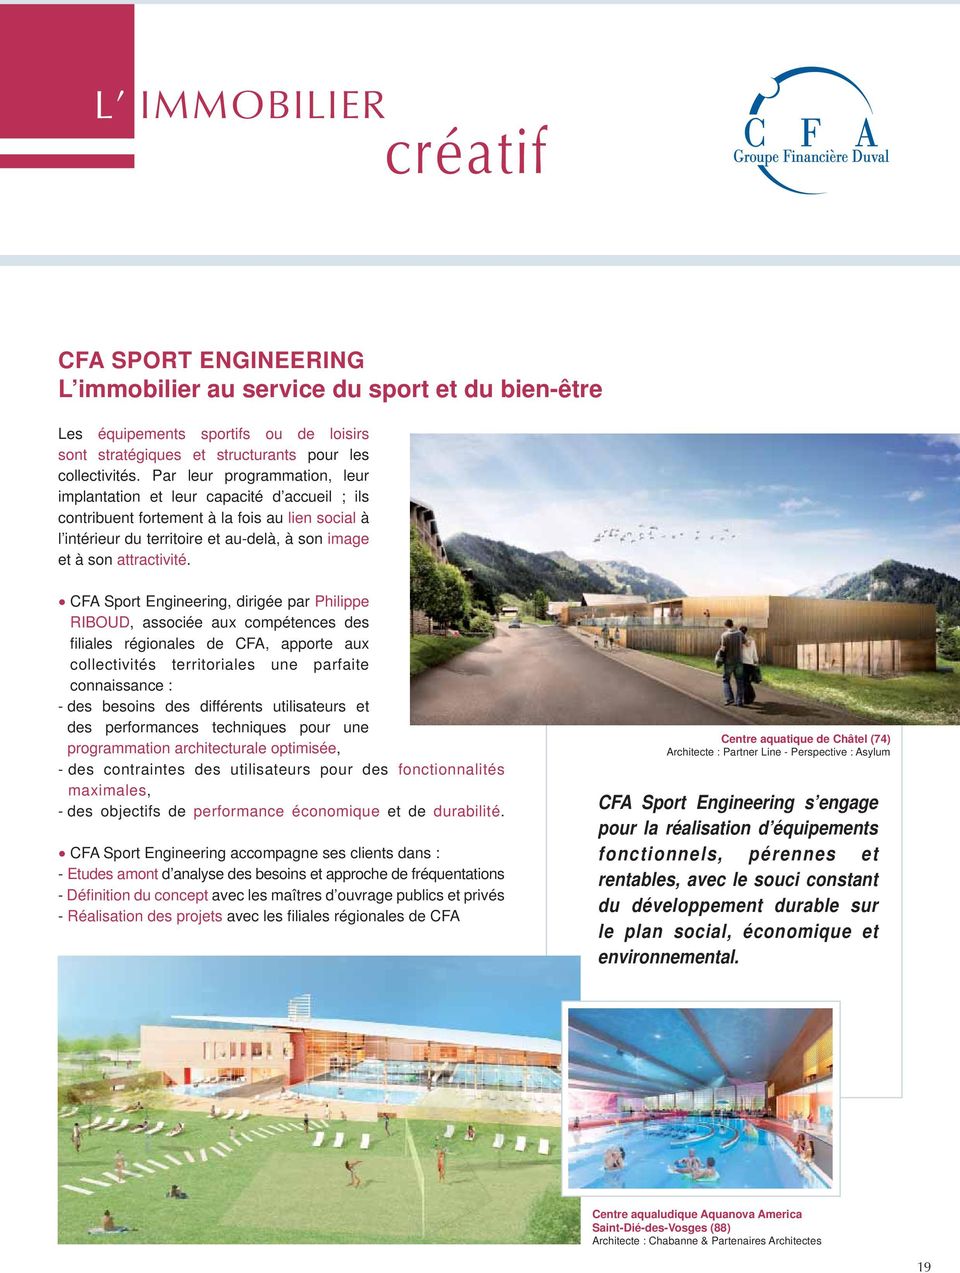 CFA Sport Engineering, dirigée par Philippe RIBOUD, associée aux compétences des fi liales régionales de CFA, apporte aux collectivités territoriales une parfaite connaissance : - des besoins des